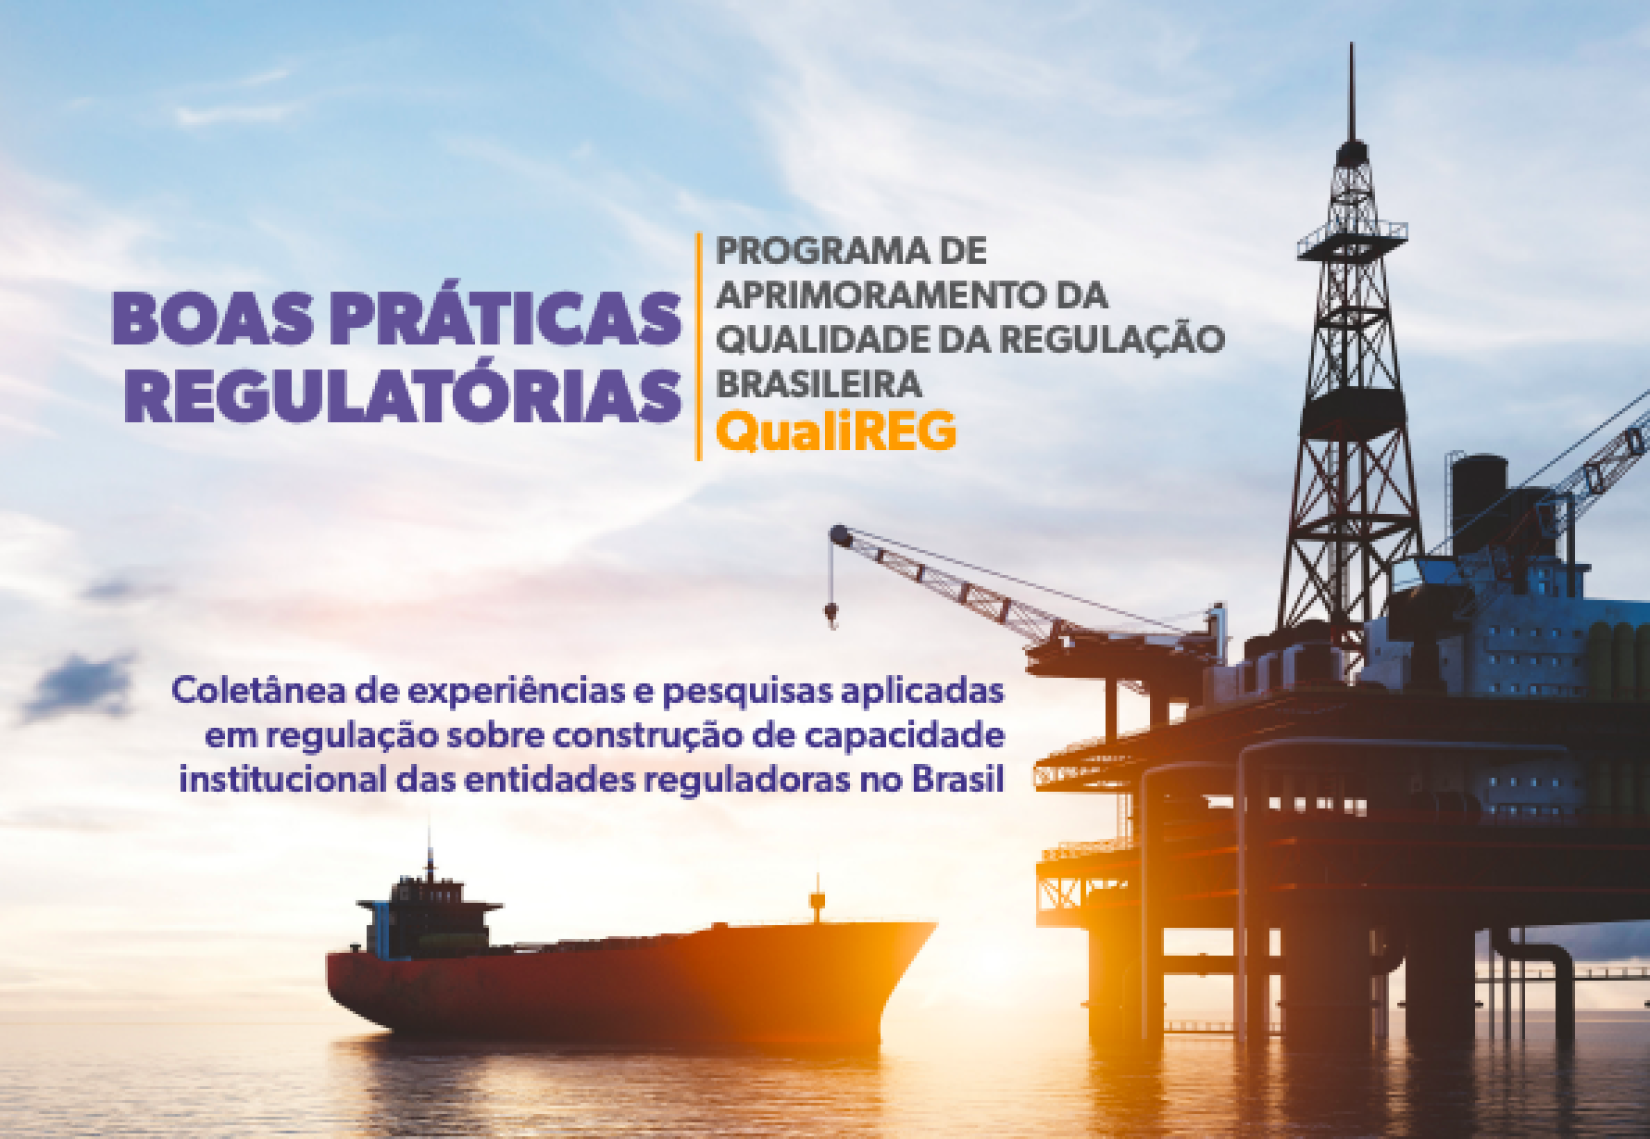  O Programa de Aprimoramento da Qualidade da Regulação Brasileira – QualiREG – é uma iniciativa da CGU, realizada com o apoio do PNUD e do UNOPS, para disseminar uma cultura de mensuração sistemática da qualidade regulatória no Brasil.